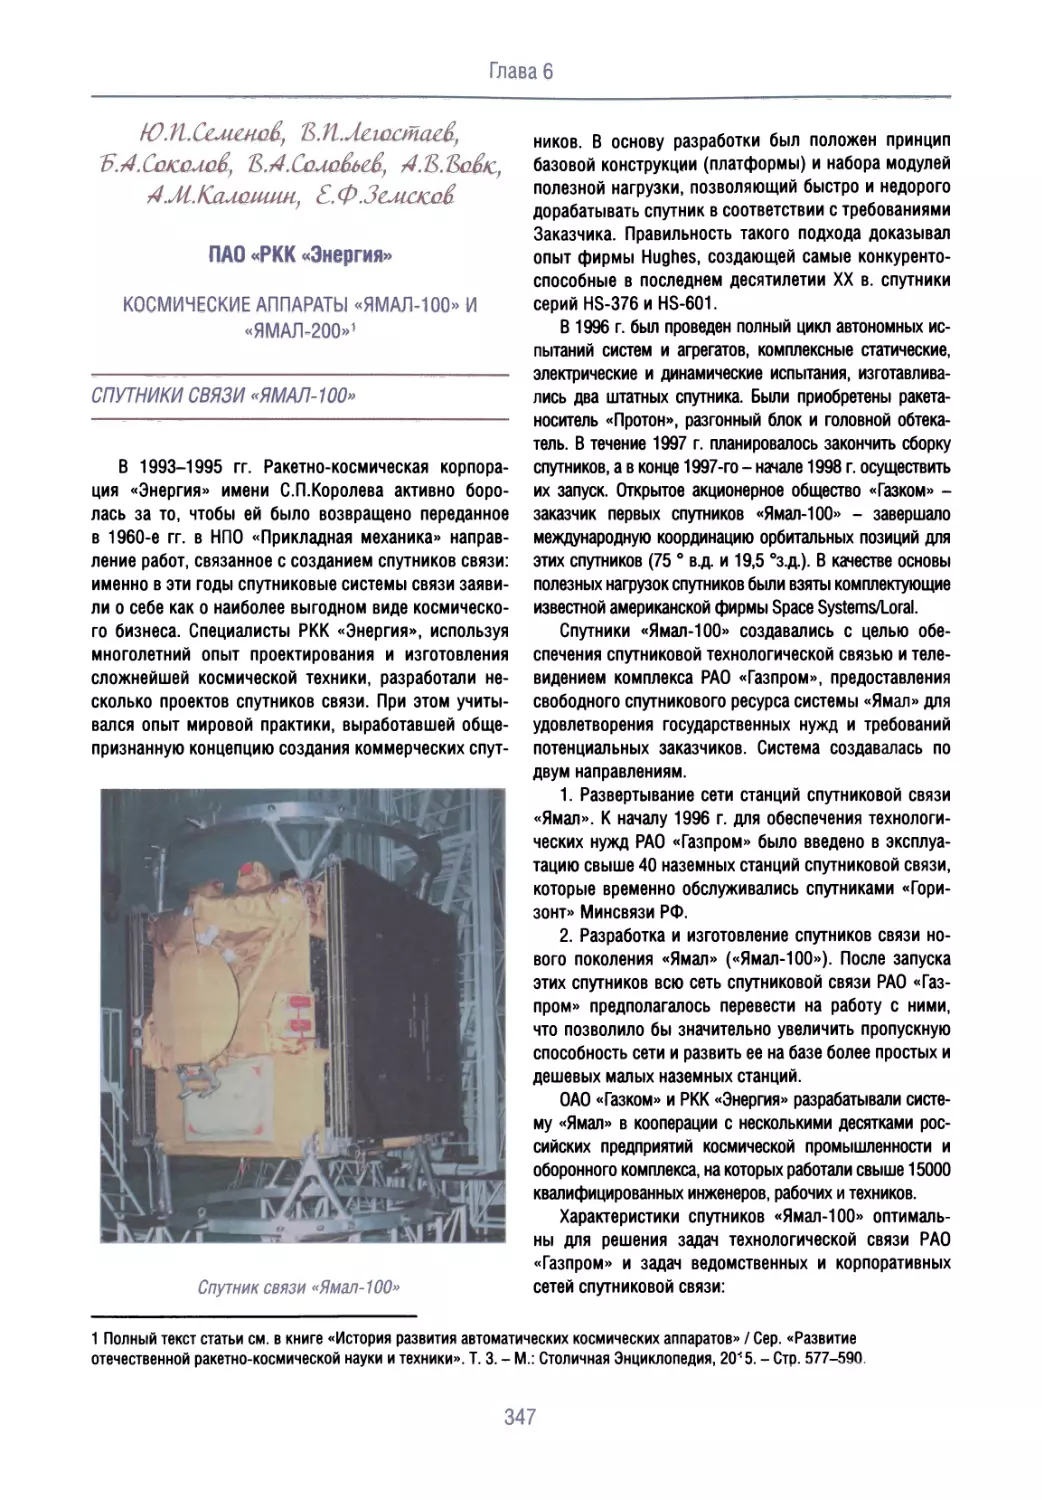 Космические аппараты «Ямал-100» и «Ямал-200»